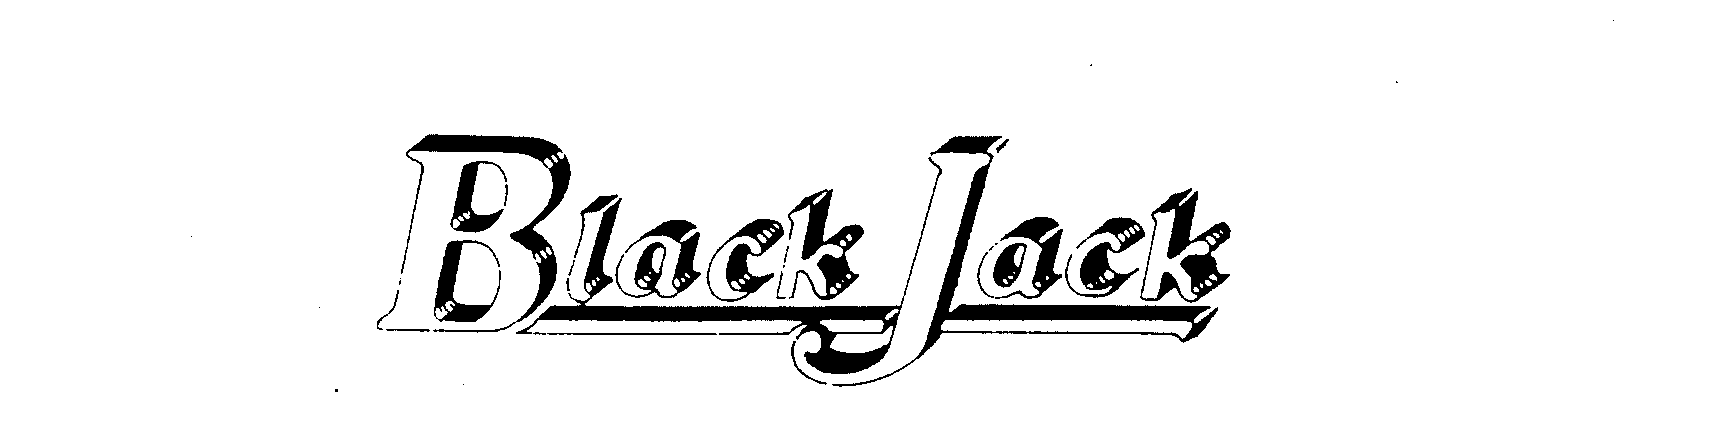 BLACK JACK